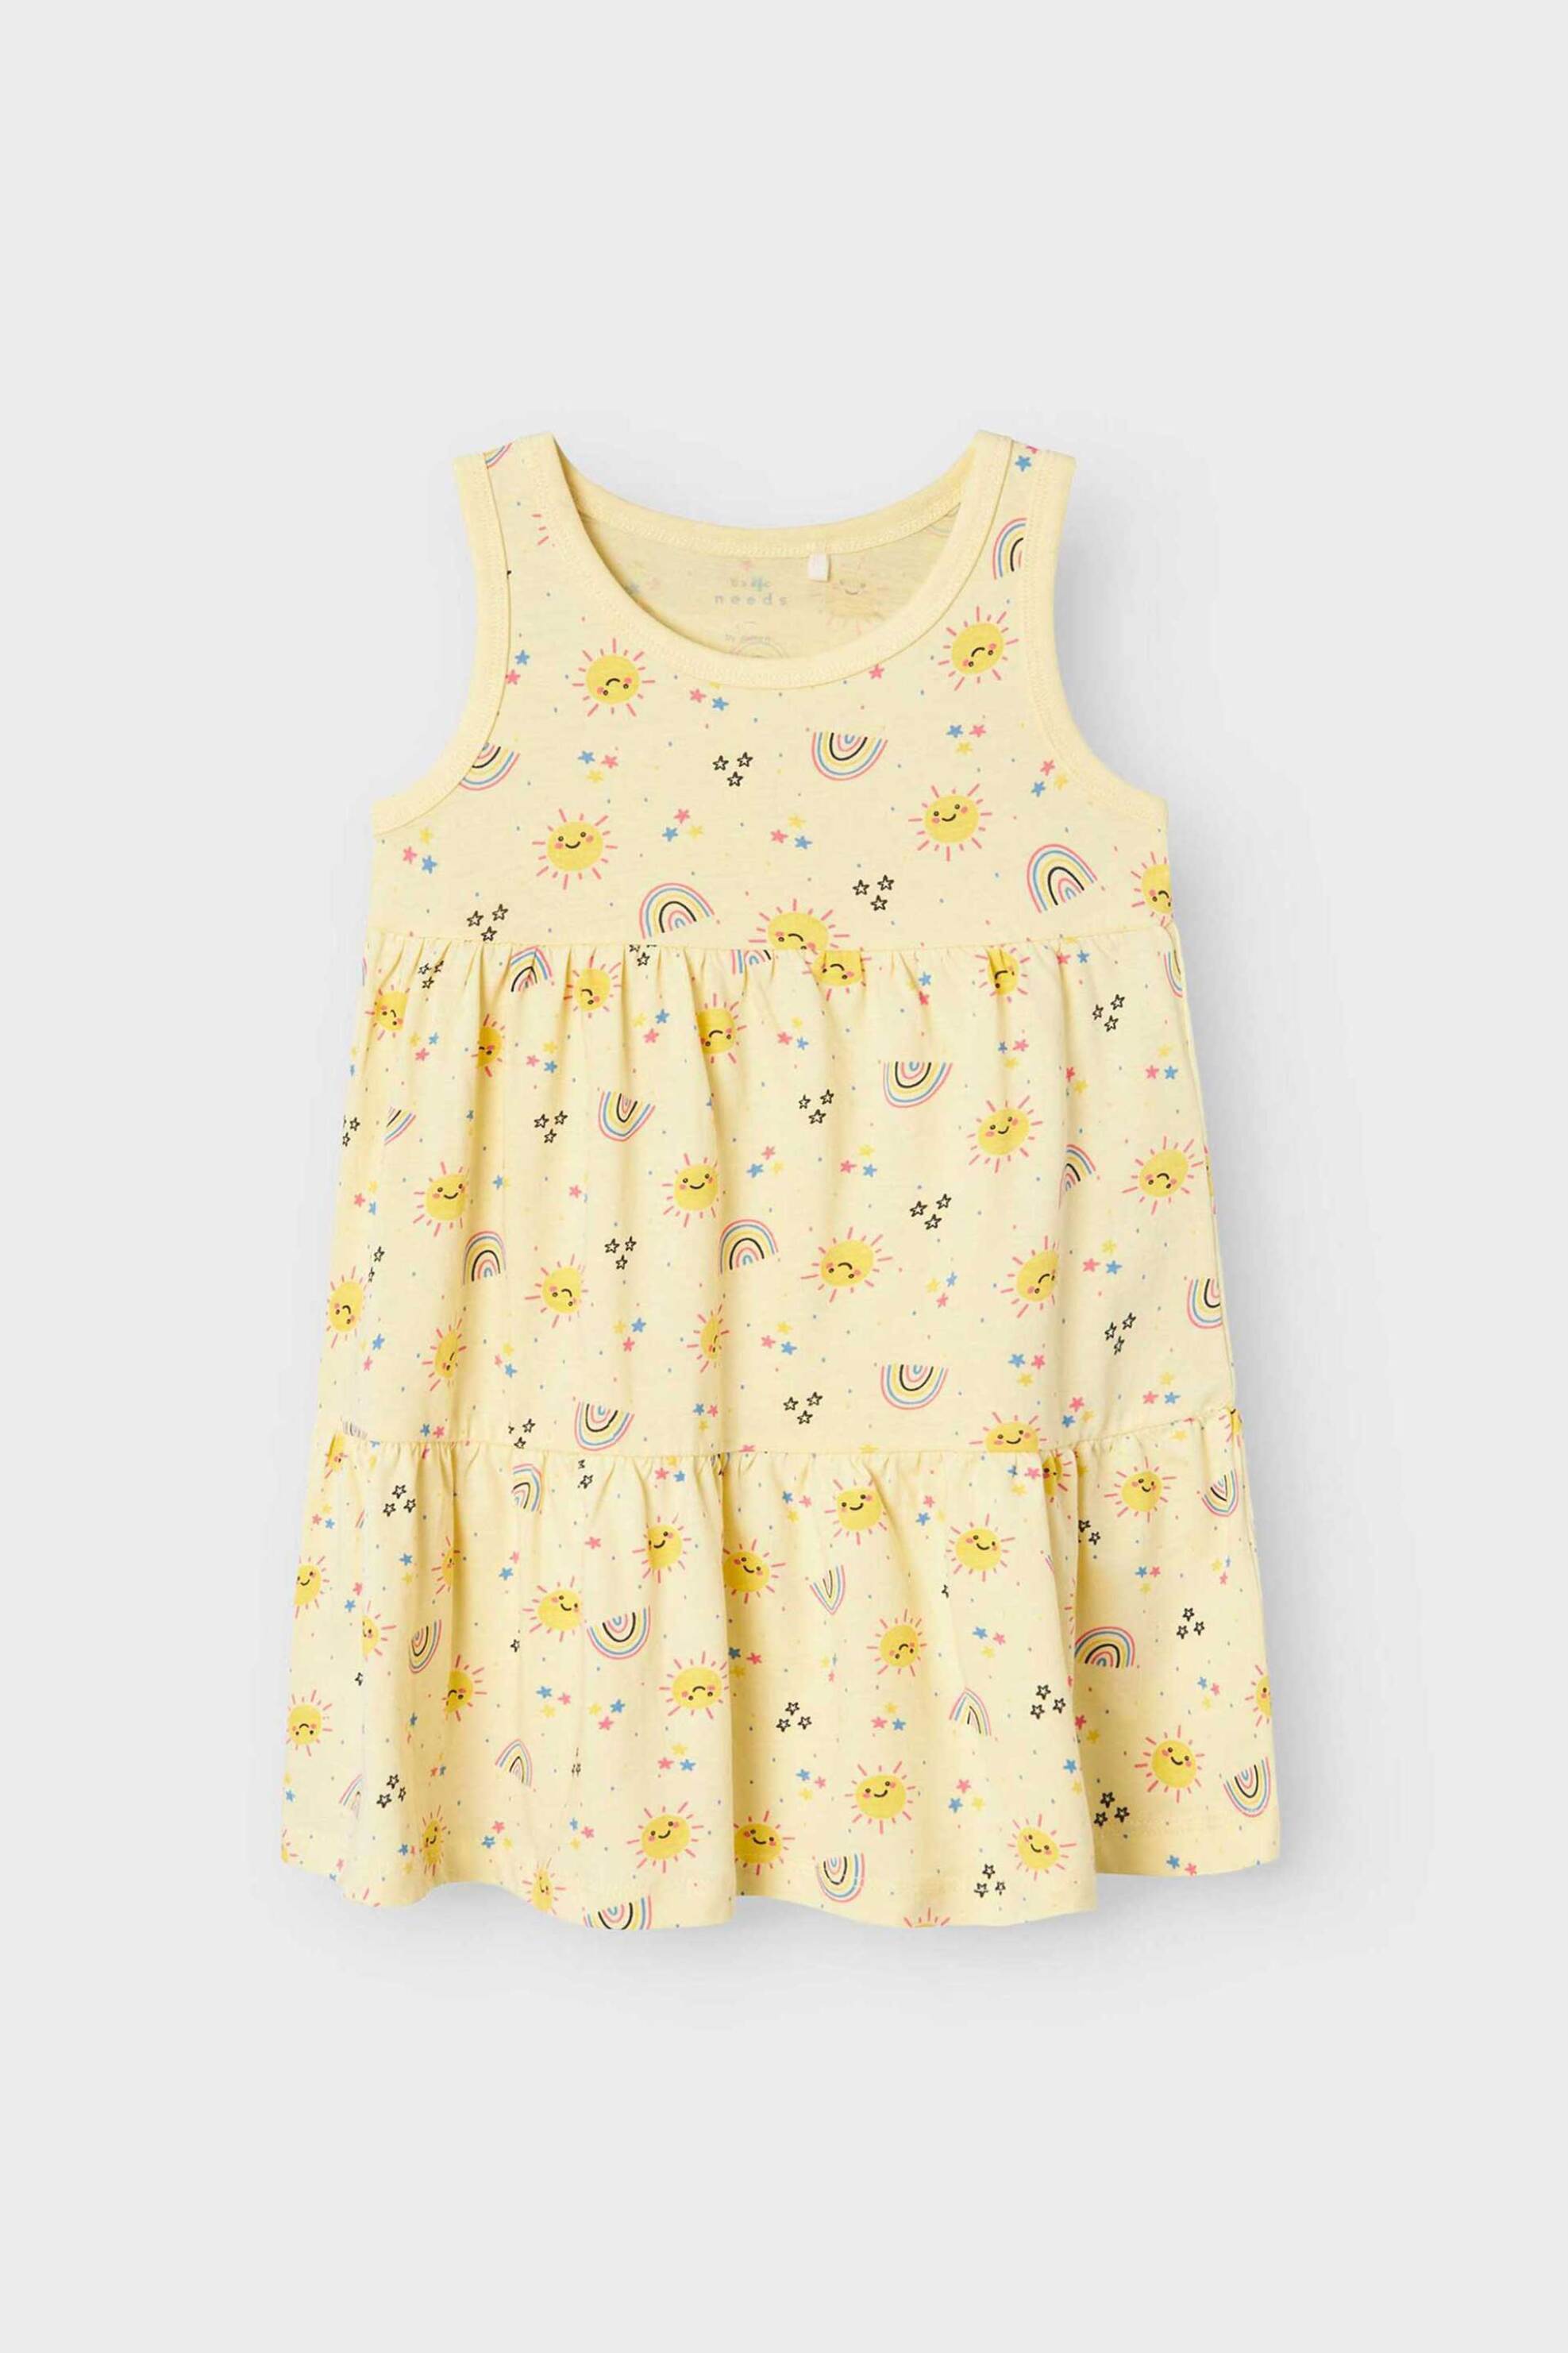 Παιδικά Ρούχα, Παπούτσια & Παιχνίδια > Παιδικά Ρούχα & Αξεσουάρ για Κορίτσια > Παιδικά Φορέματα για Κορίτσια Name It παιδικό αμάνικο φόρεμα με all-over print Regular Fit - 13228172 Κίτρινο